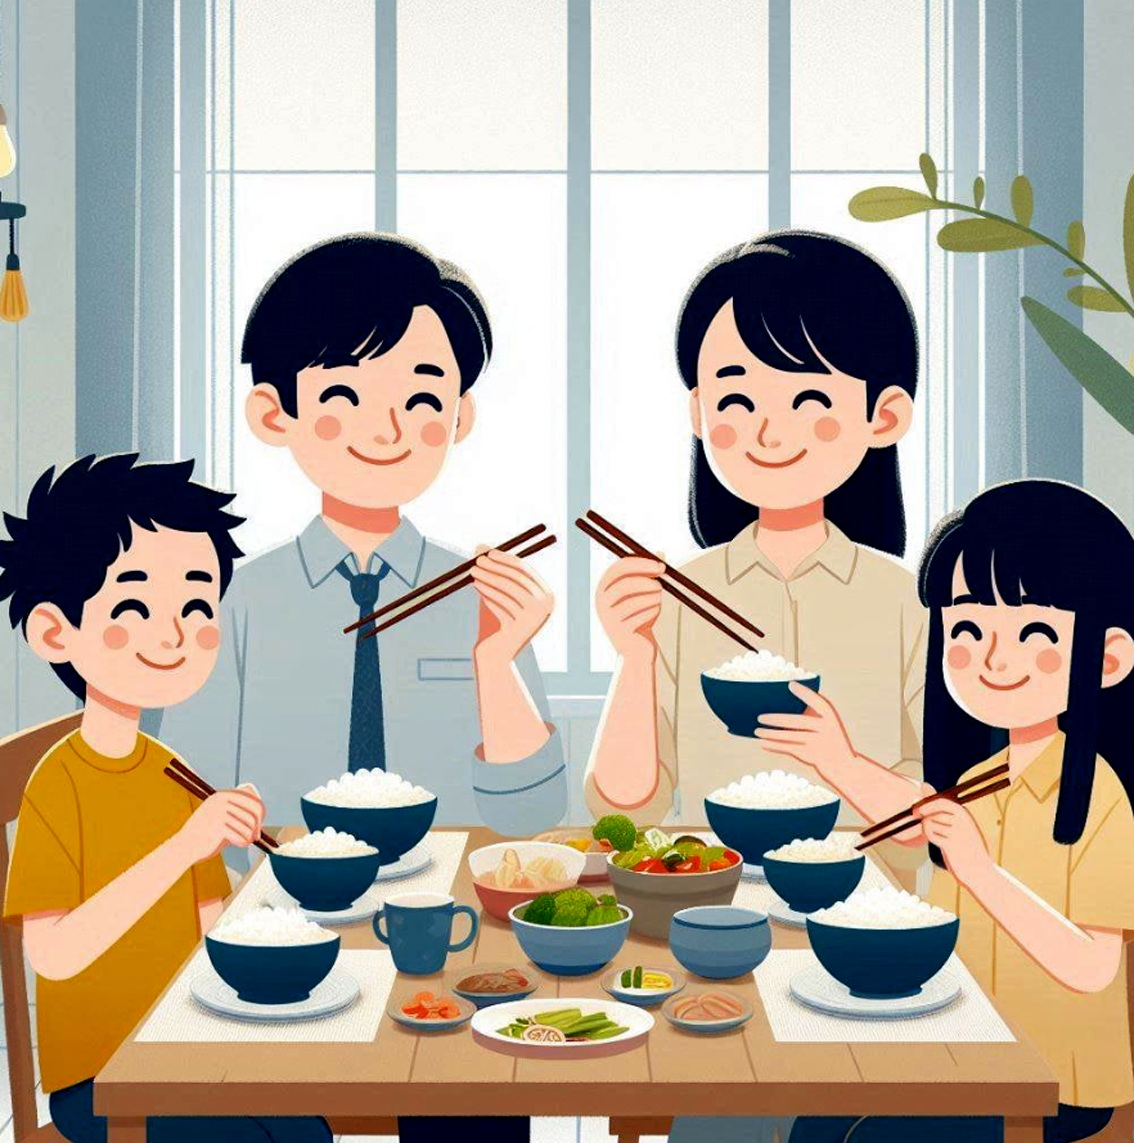 Gia đình vui nhất là lúc nấu cùng nhau, ăn cùng nhau - Ảnh tạo bằng AI 